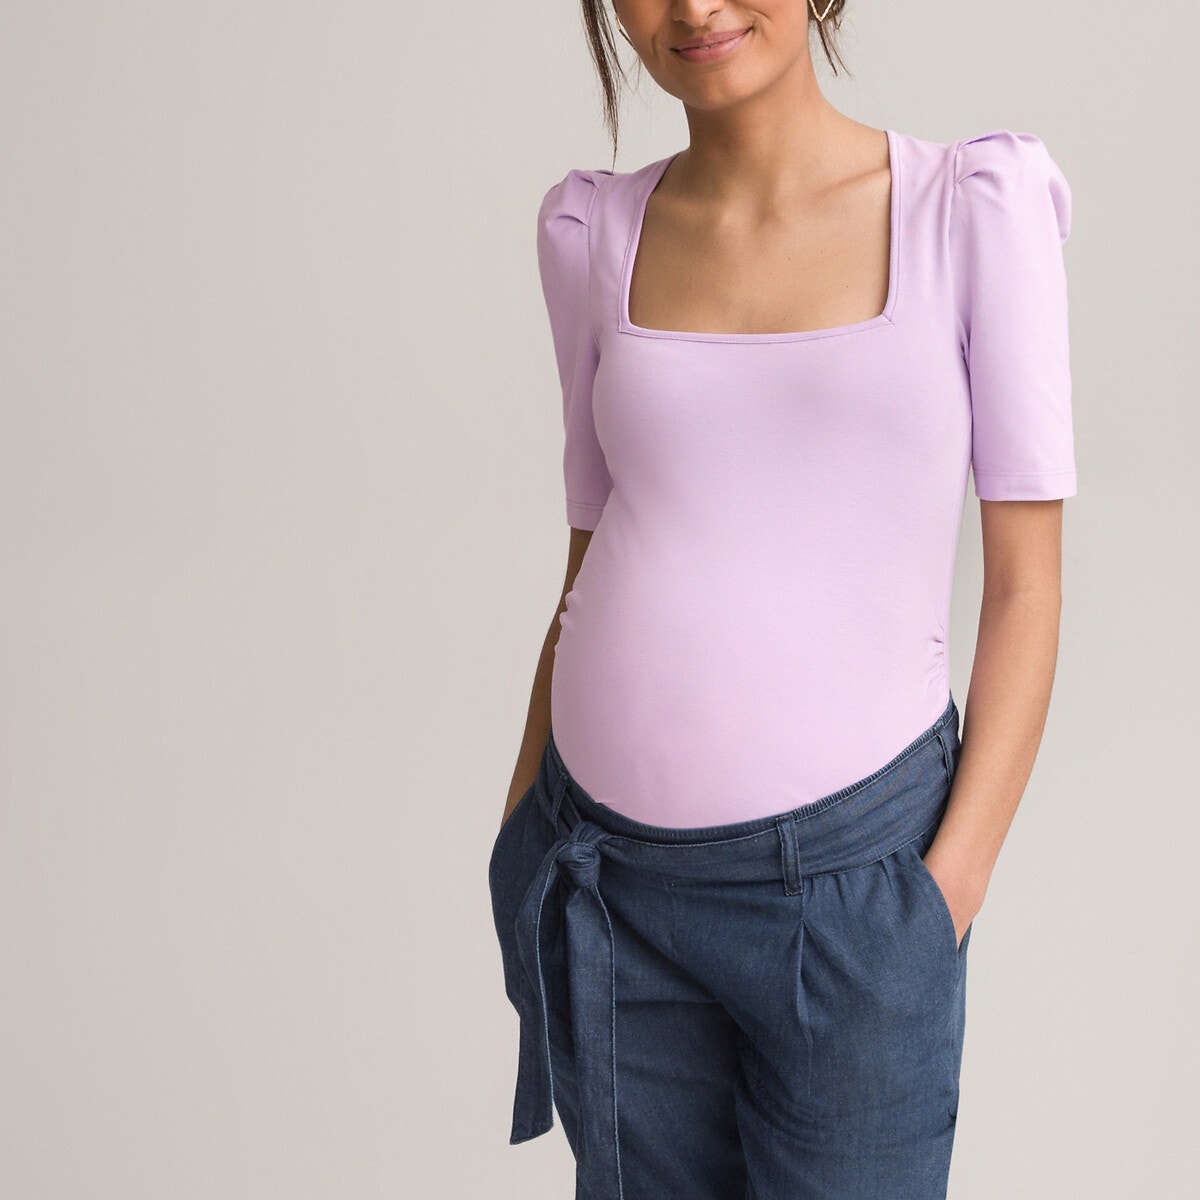 Κοντομάνικη μπλούζα εγκυμοσύνης με τετράγωνο ντεκολτέ